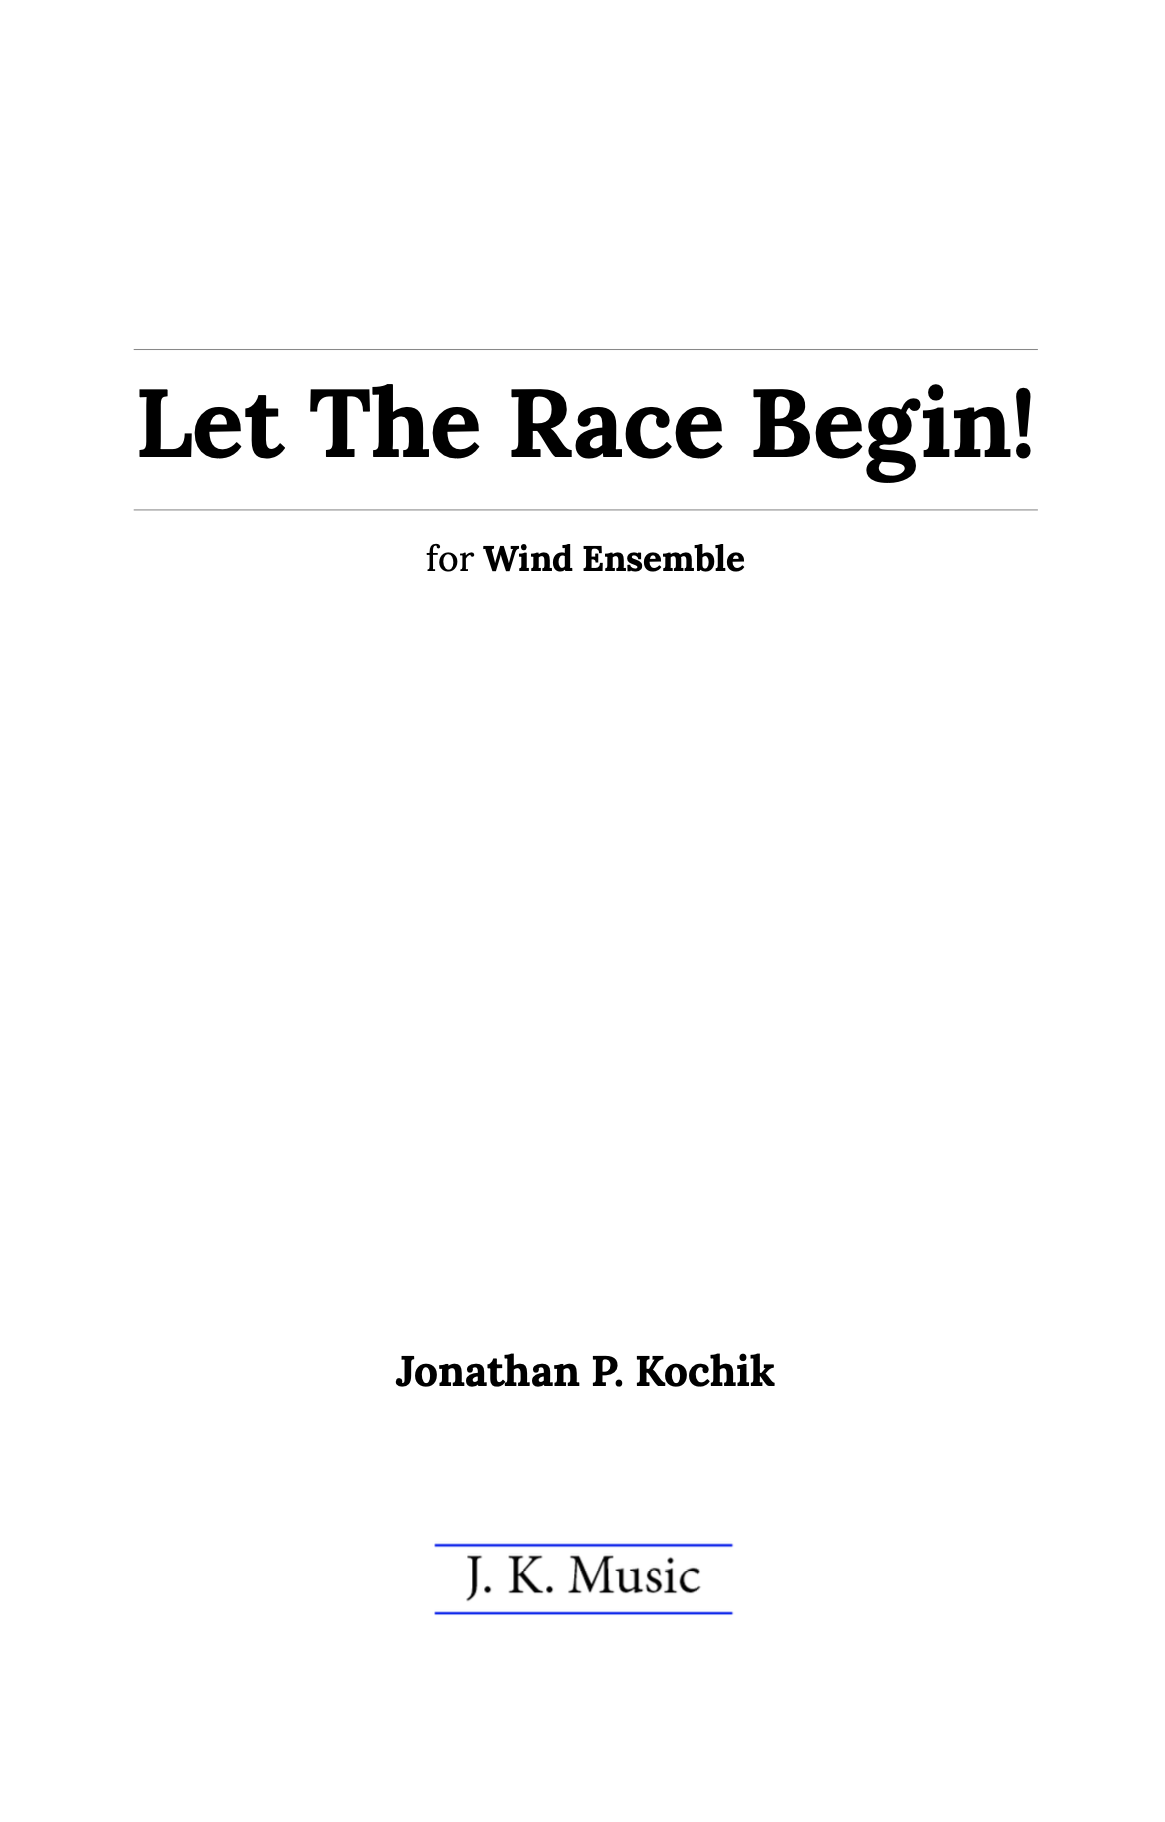 Let The Race Begin by Jonathan Kochik